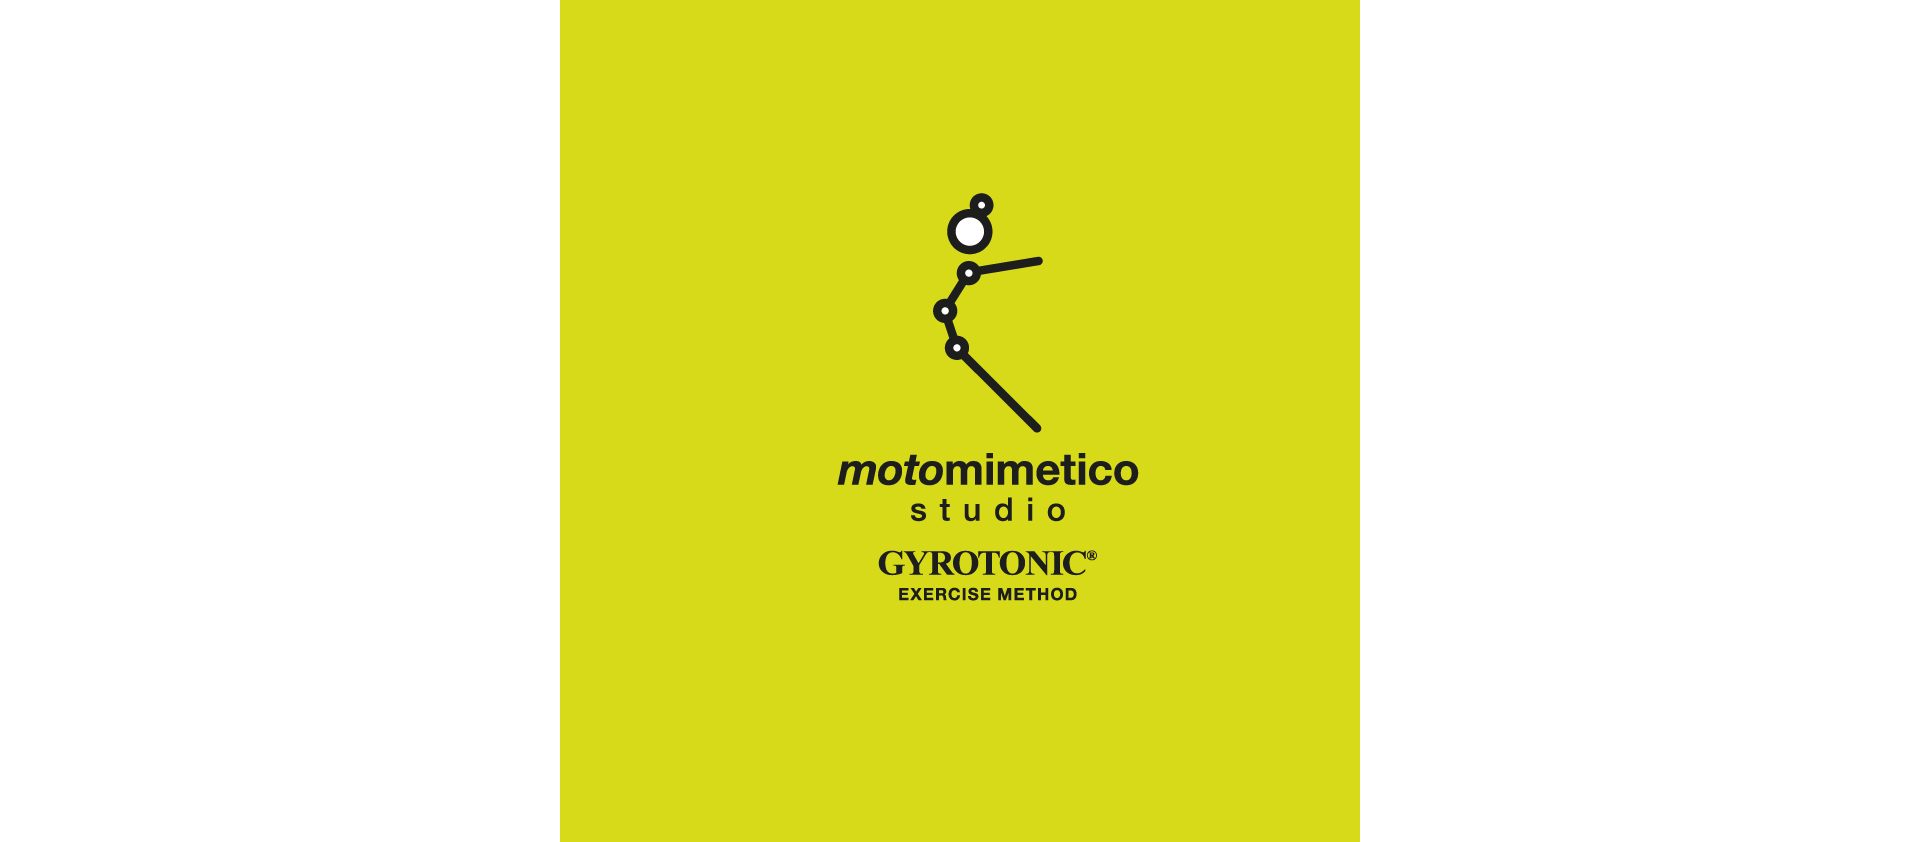 motomimetico-studio-gyrotonic-exercise-method